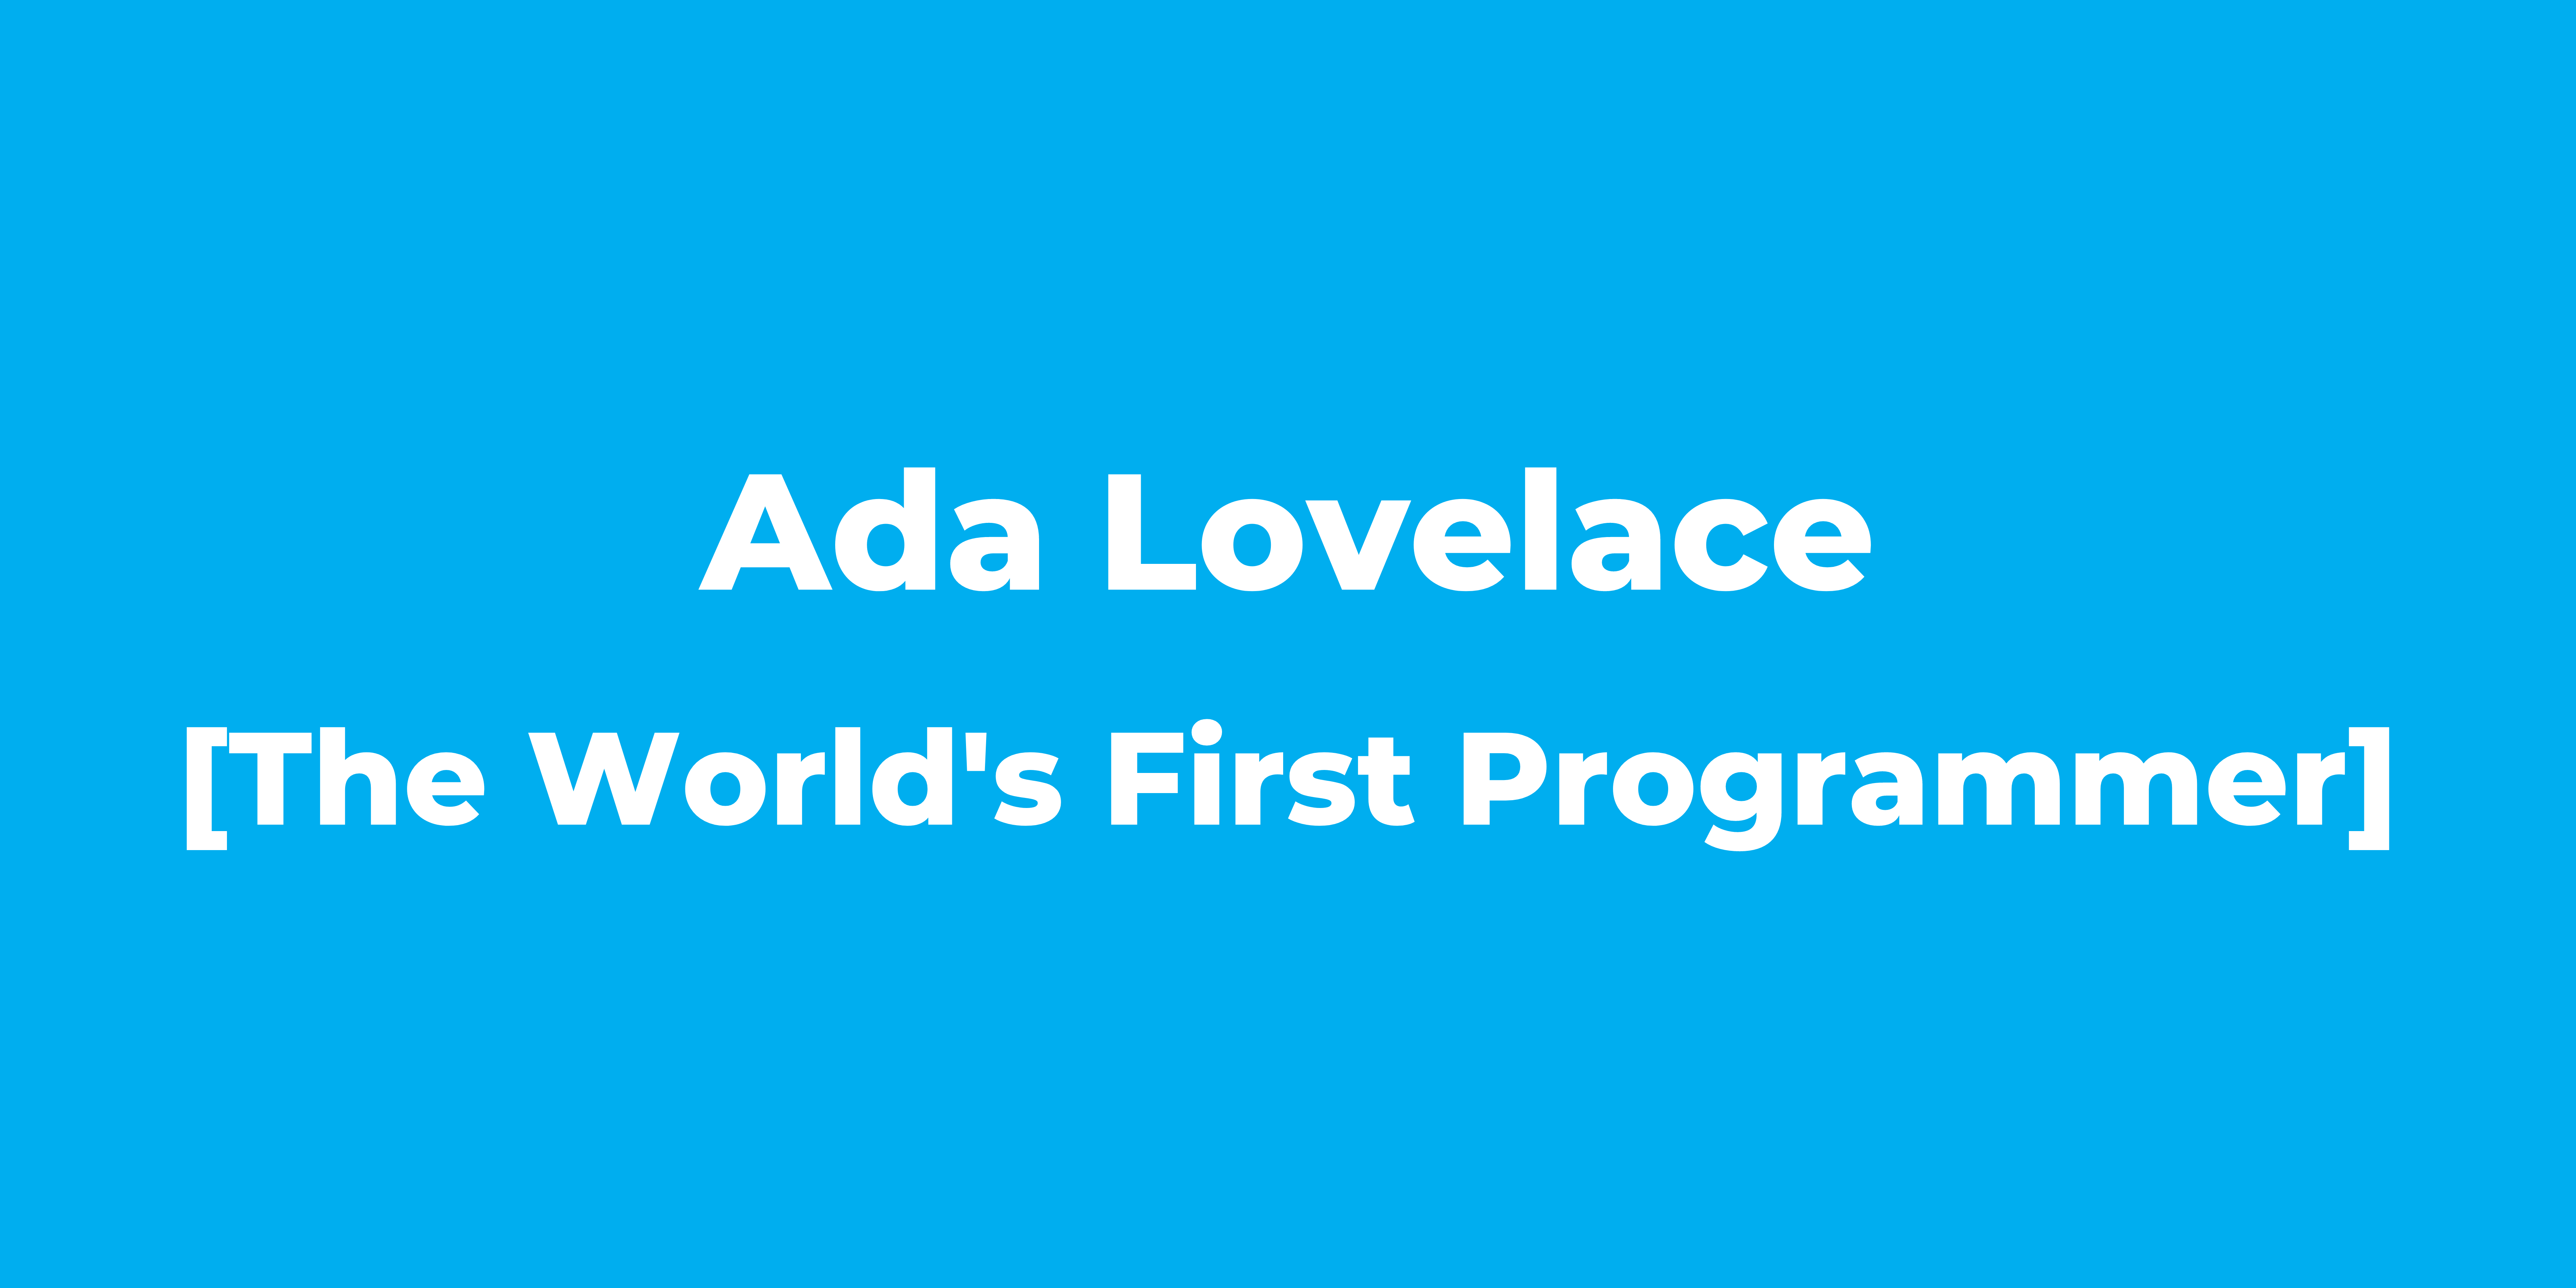 Ada Lovelace The World's First Programmer